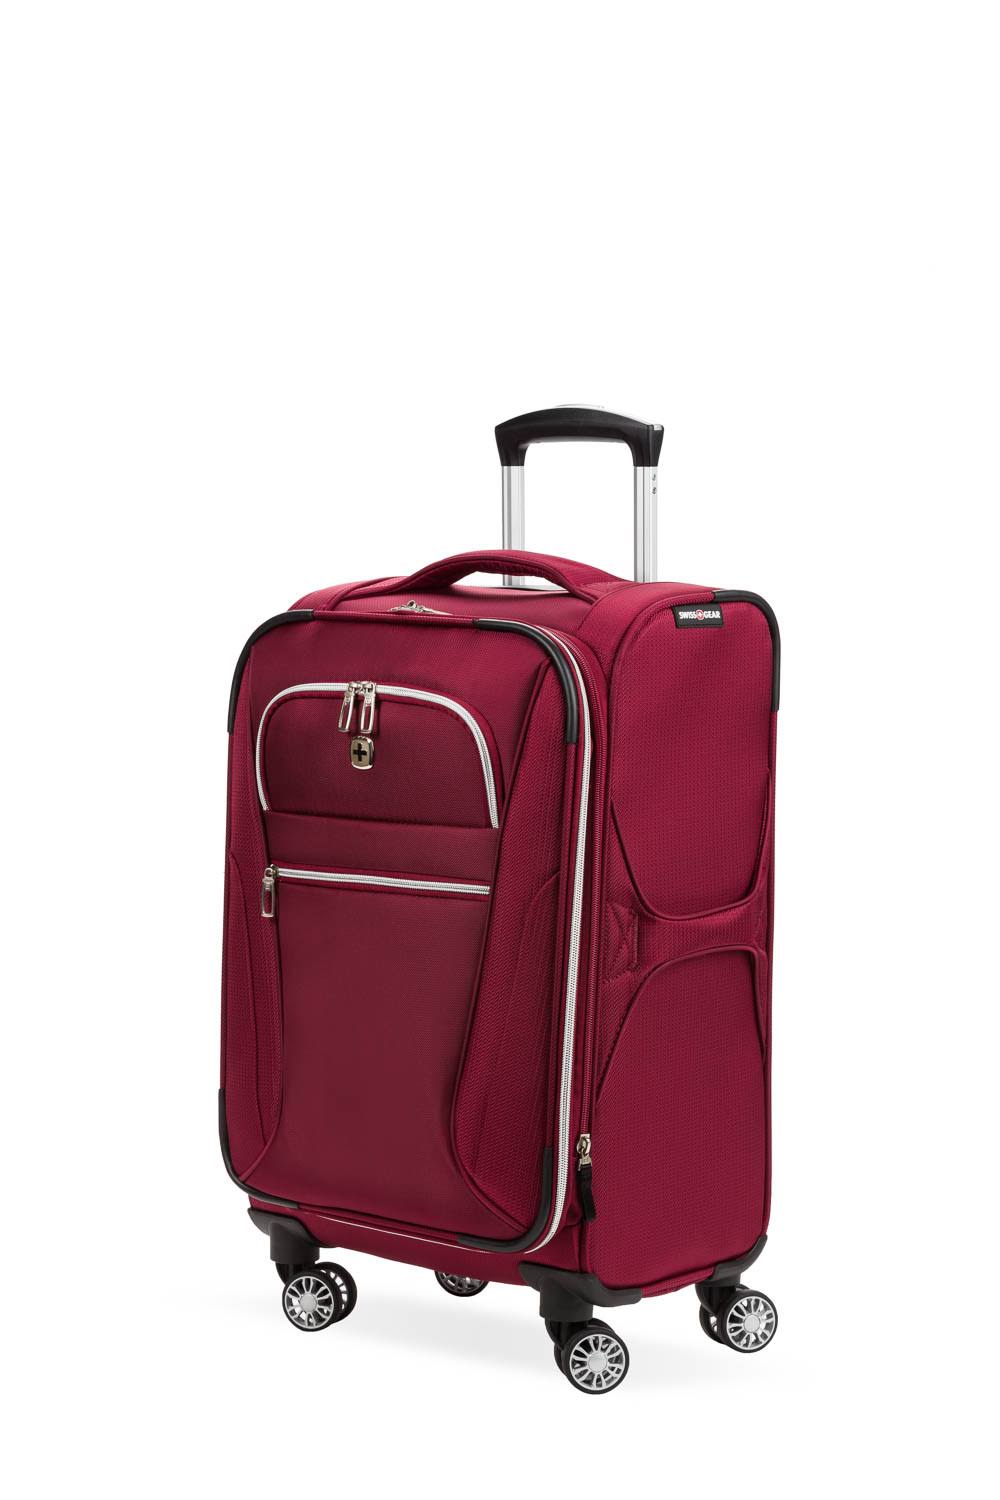 Swissgear 20" Checklite Pilot Case Carry on Suitcase - Burgundy Velvet, Red Velvet